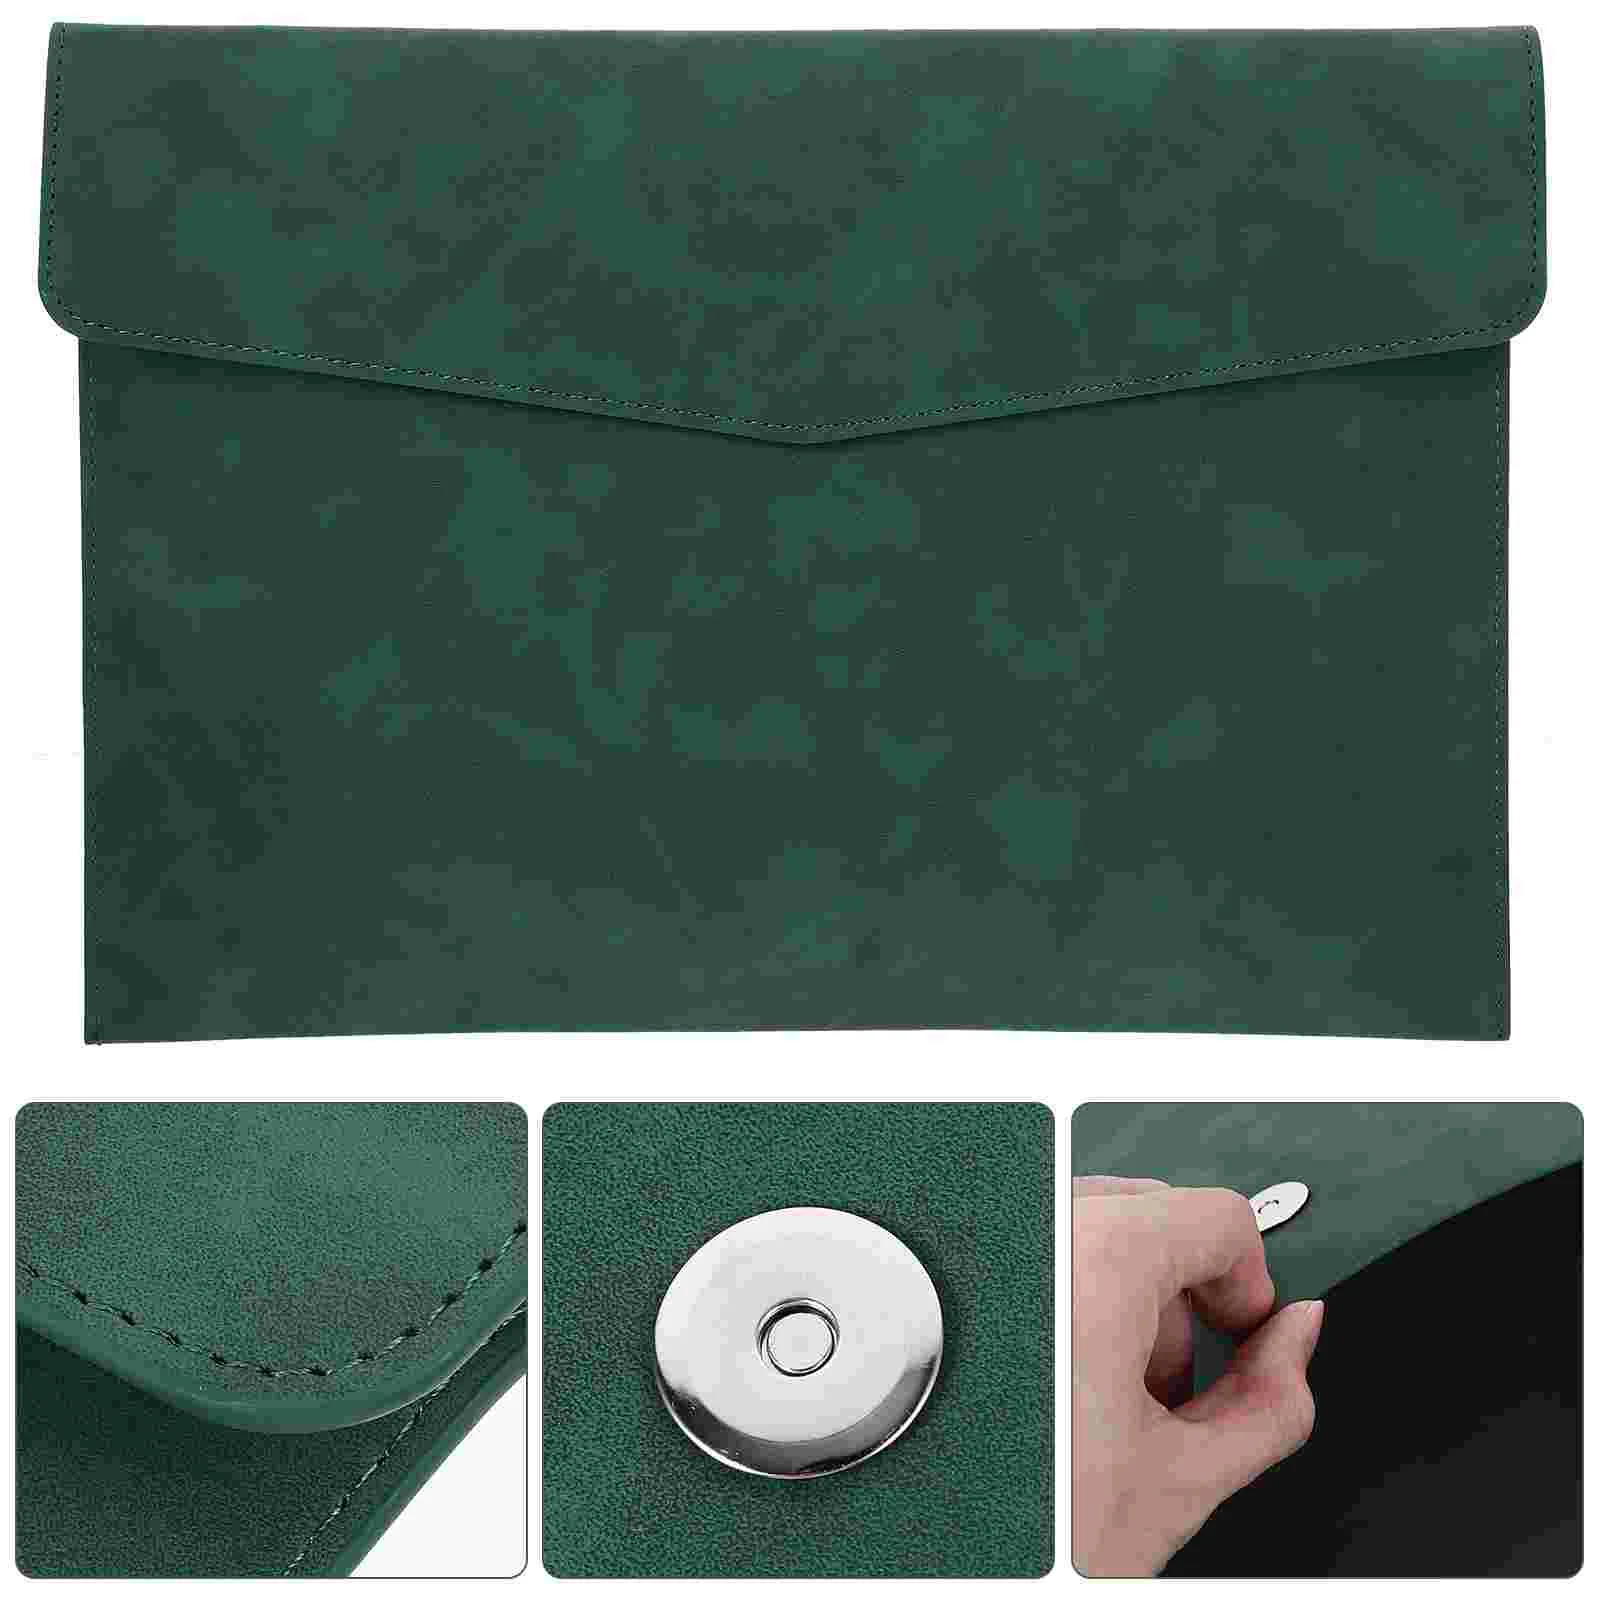 

Папка для файлов A4, сумка для хранения документов, портфель (зеленый), папки с карманами